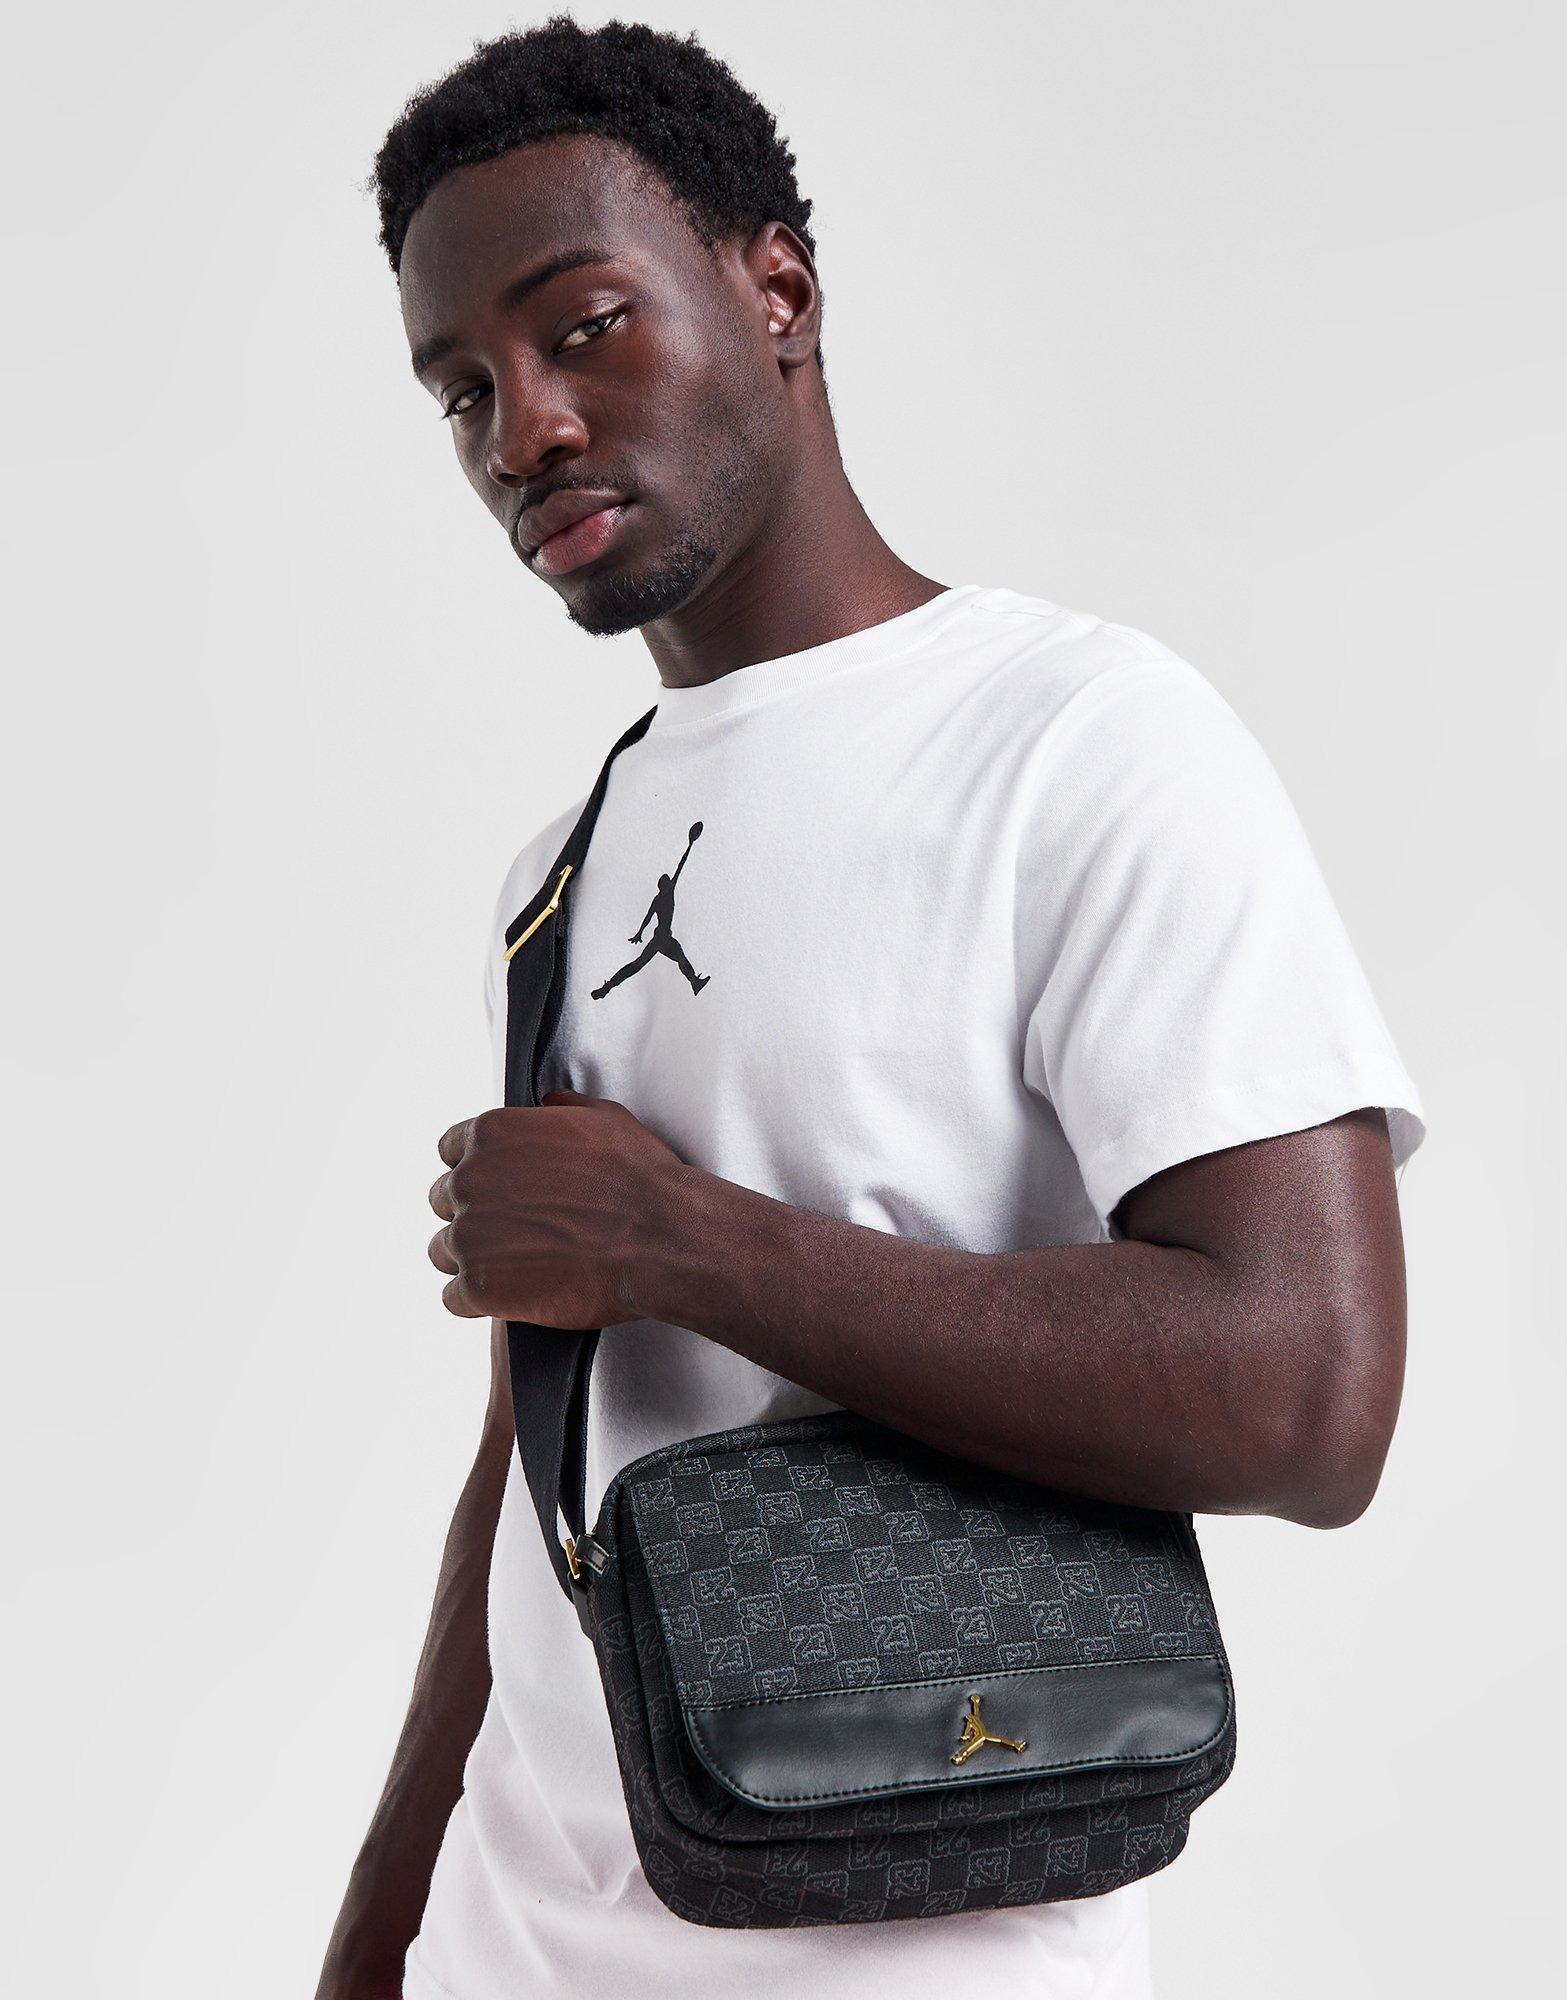 Air Jordan Monogram Crossbody Messenger Bag Sling Straps - Black & Gold  - NEW!!!